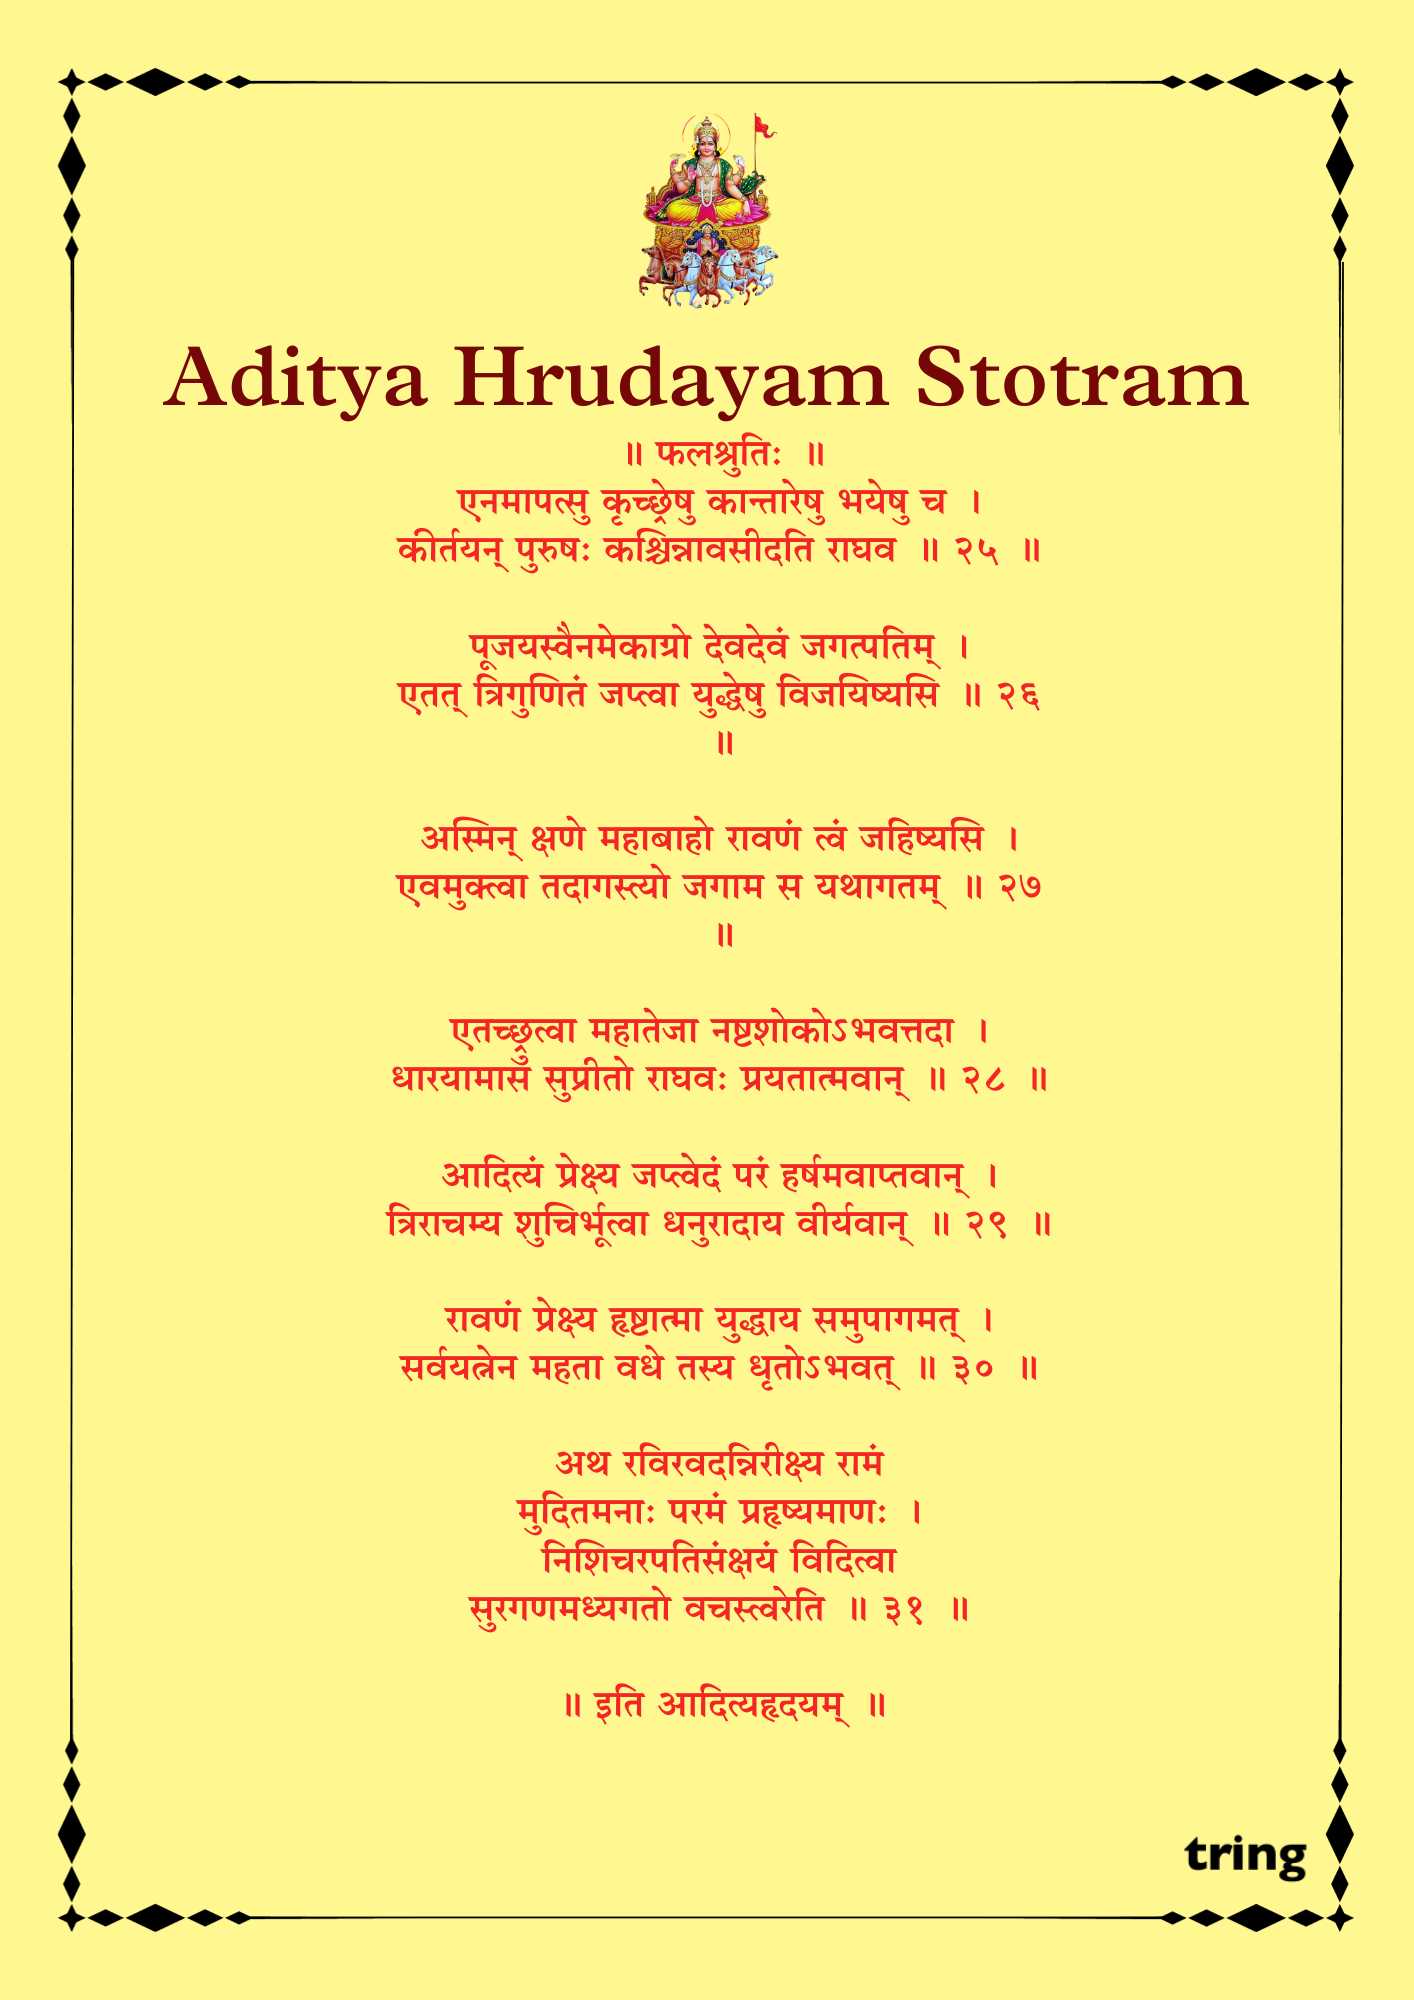 Aditya Hrudayam Stotram Images (2)